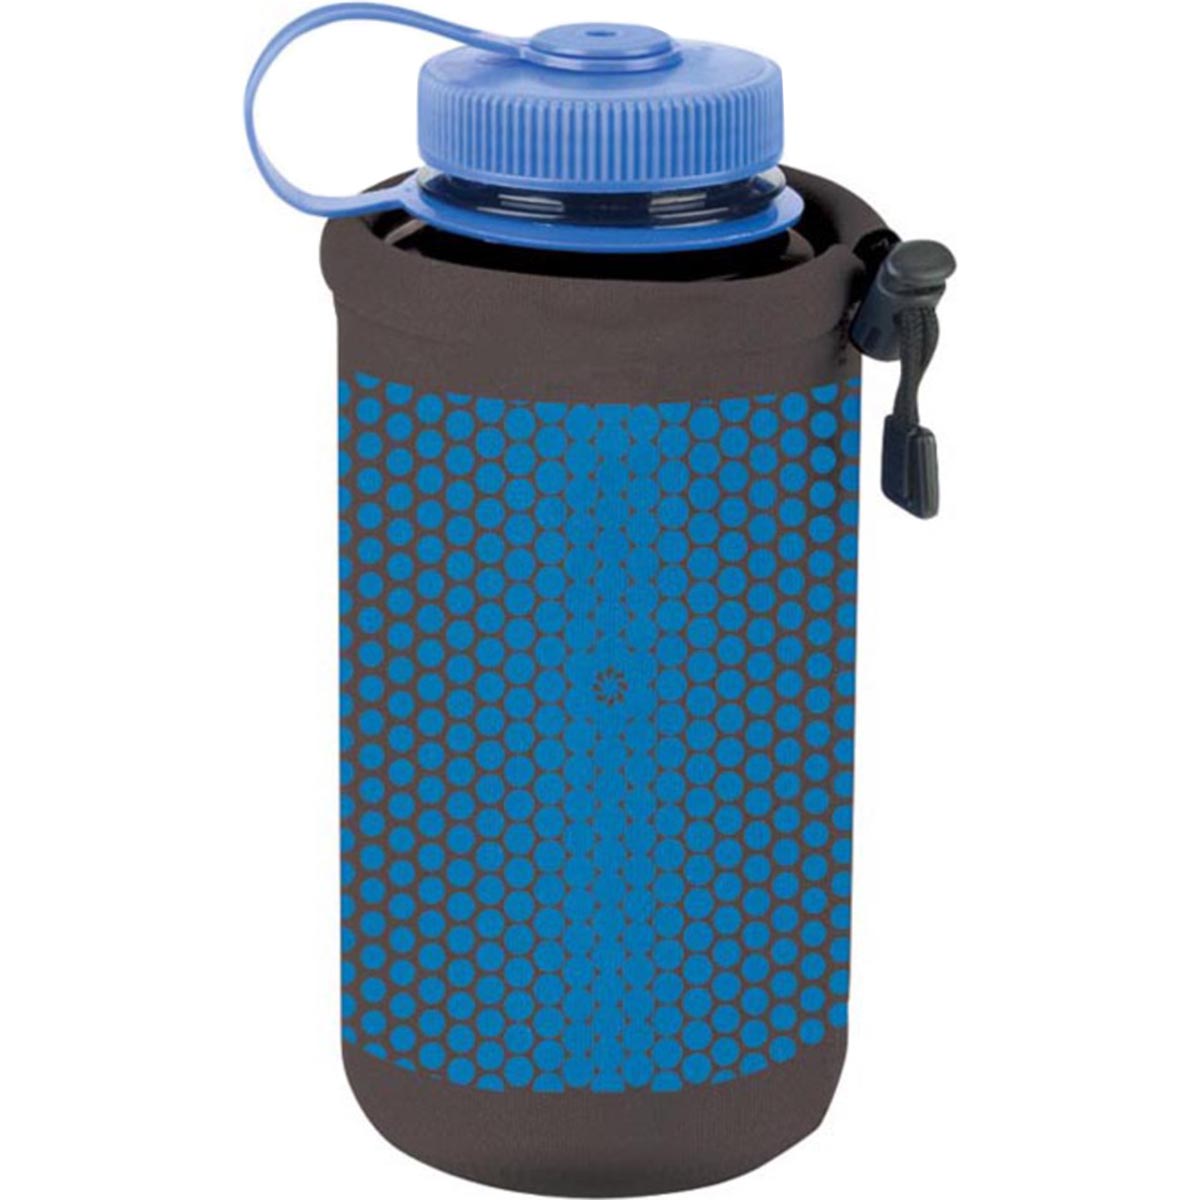 Nalgene Cool Stuff Neoprene 32 oz. Water Bottle Cover Carrier - Polka Dot Print Nalgene